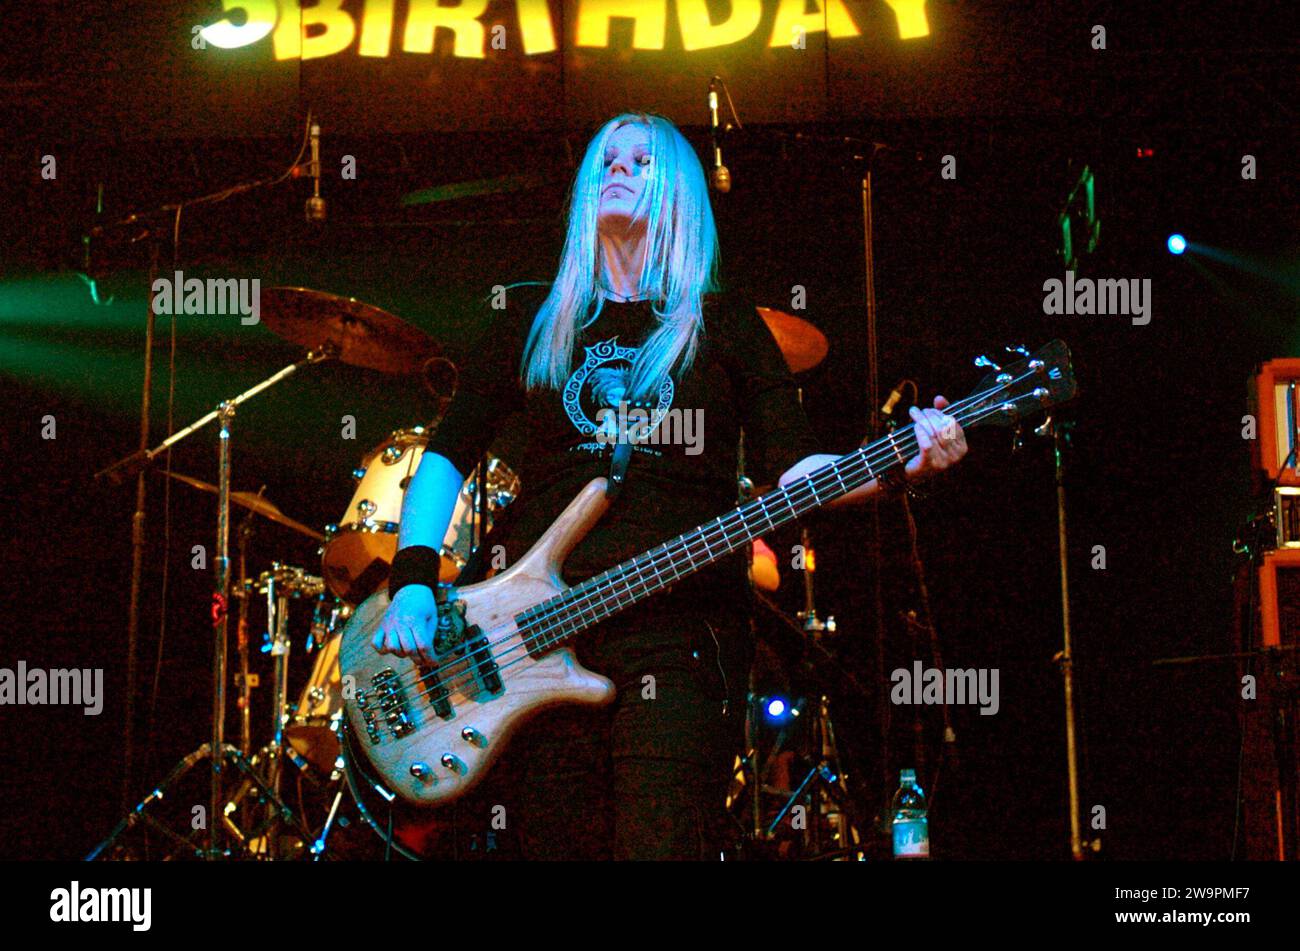 Milano Italia 2004-11-25 : Franka Weird bassista, delle bambole di pezza, gruppo musicale femminile pop punk italiano, durante il concerto dal vivo al Rolling Stone Foto Stock